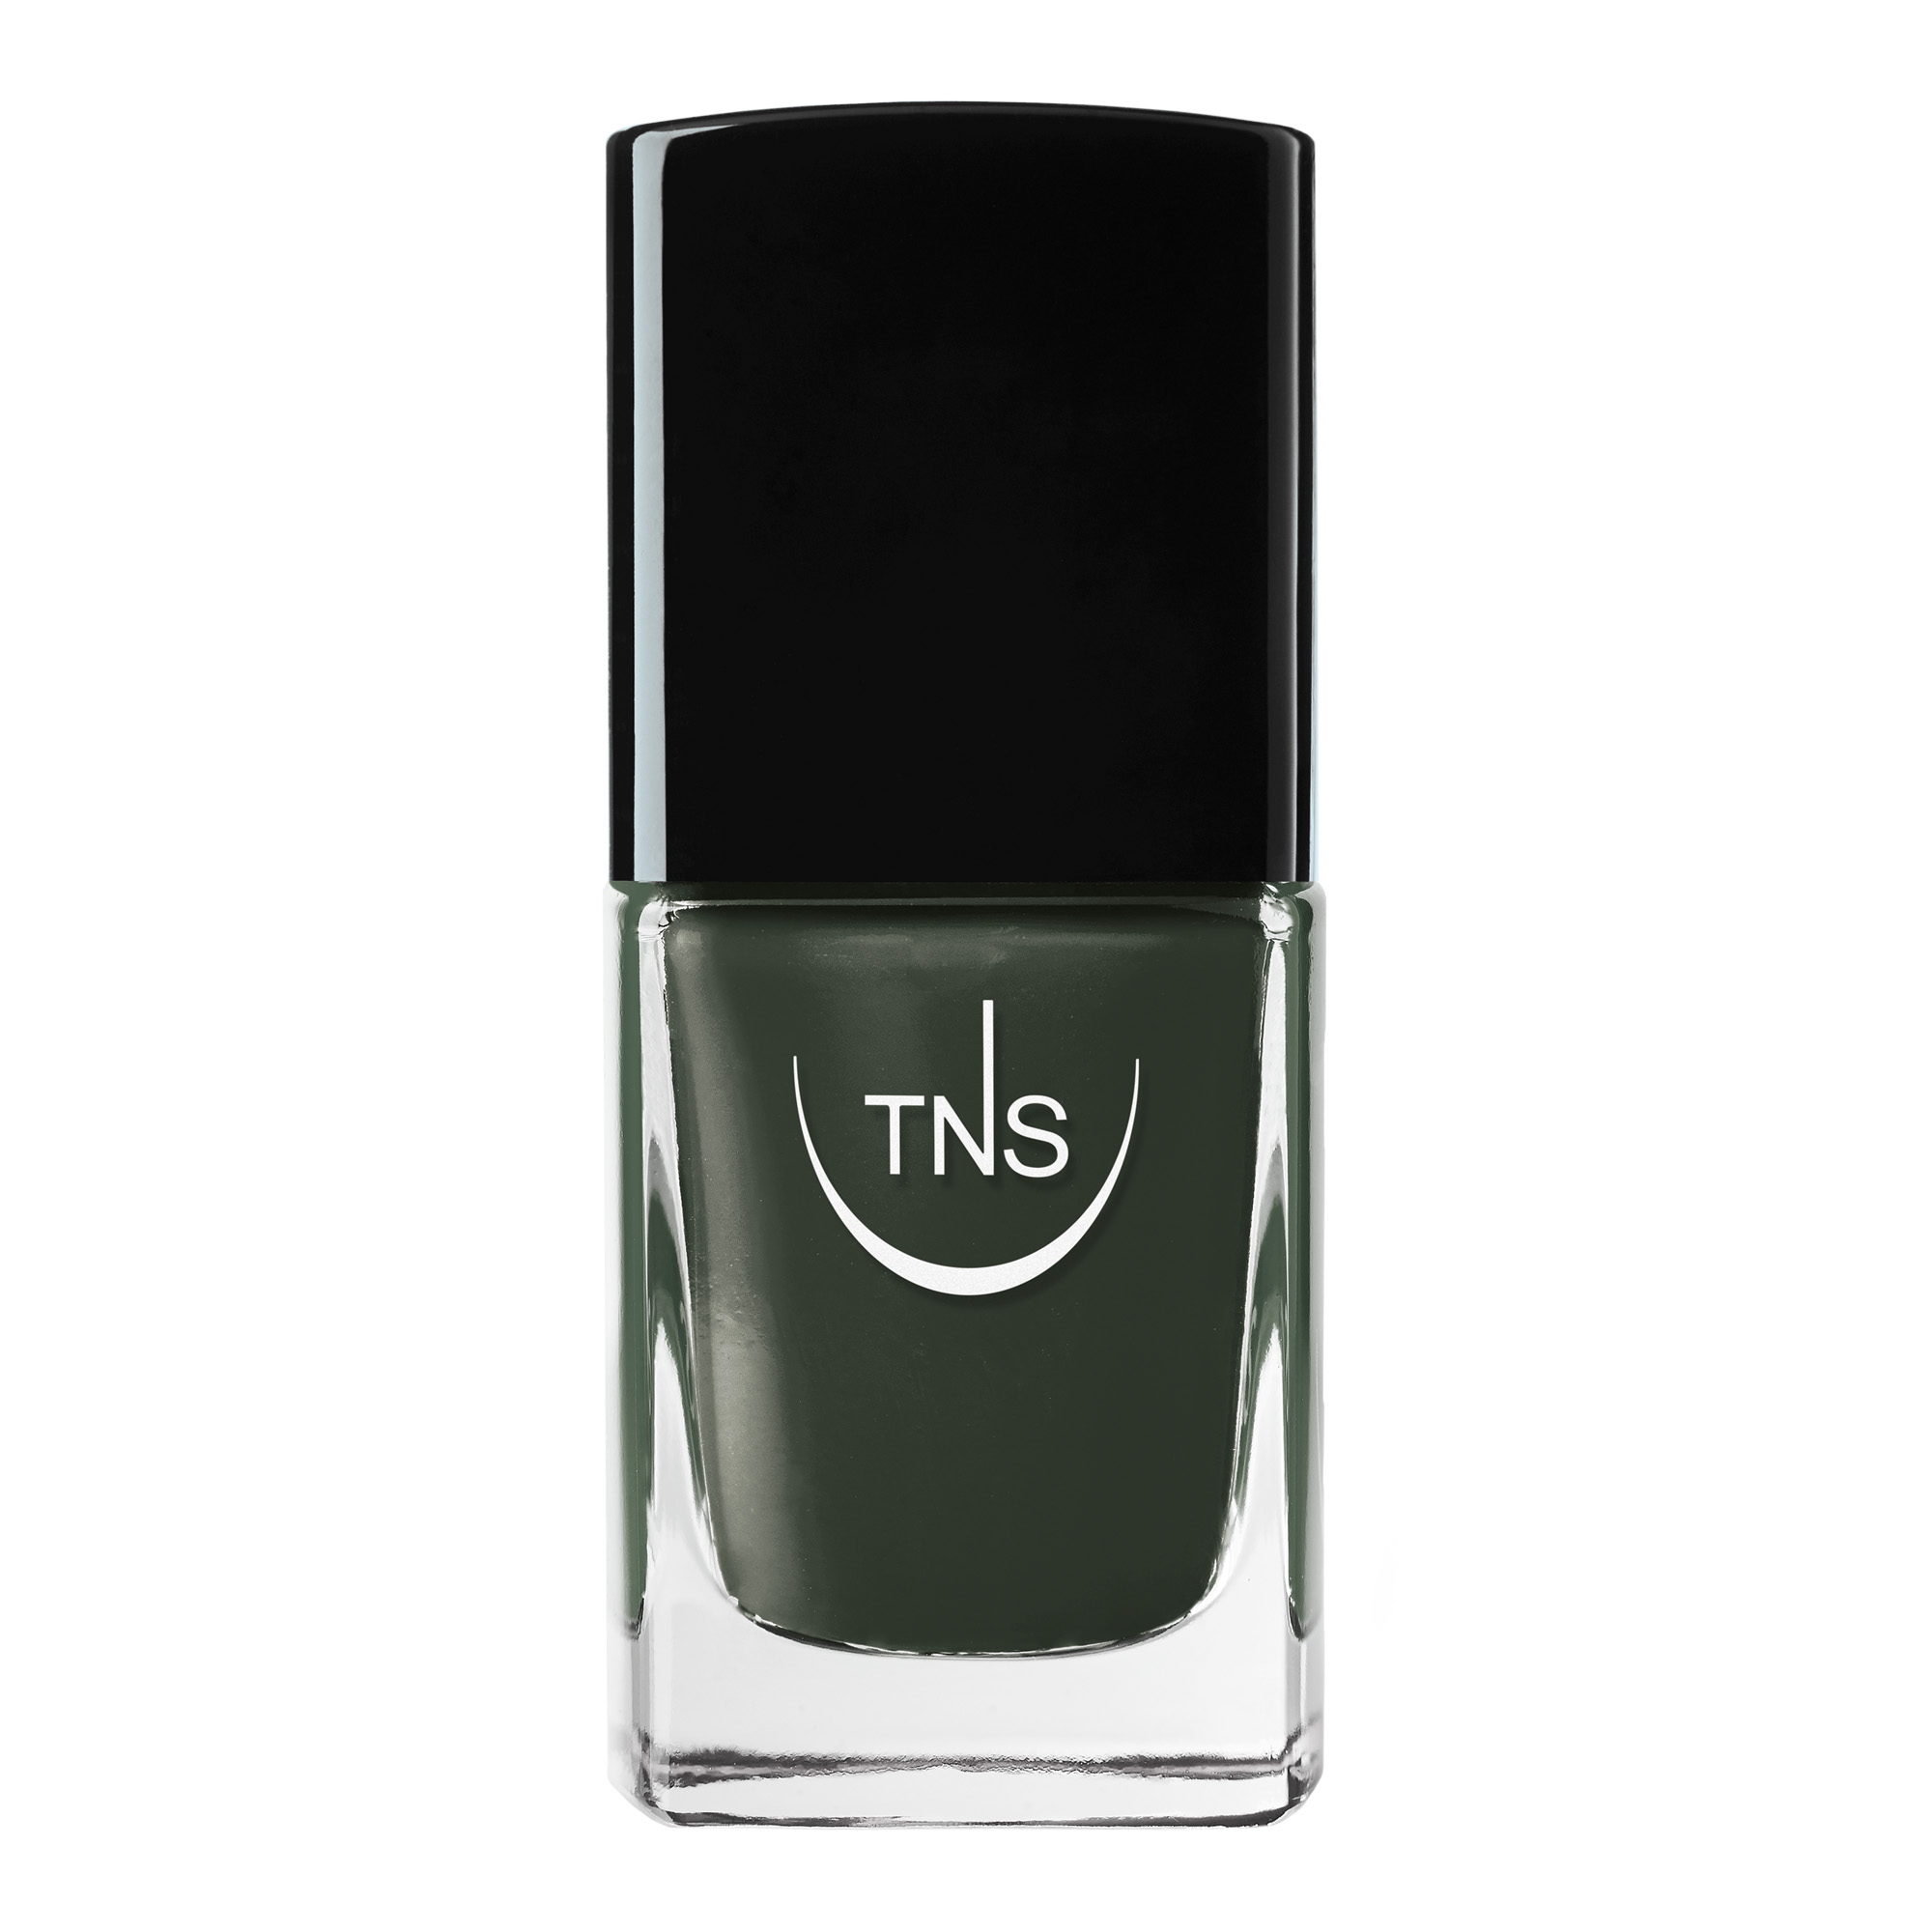 Nail polish Foresta dark green 10 ml TNS